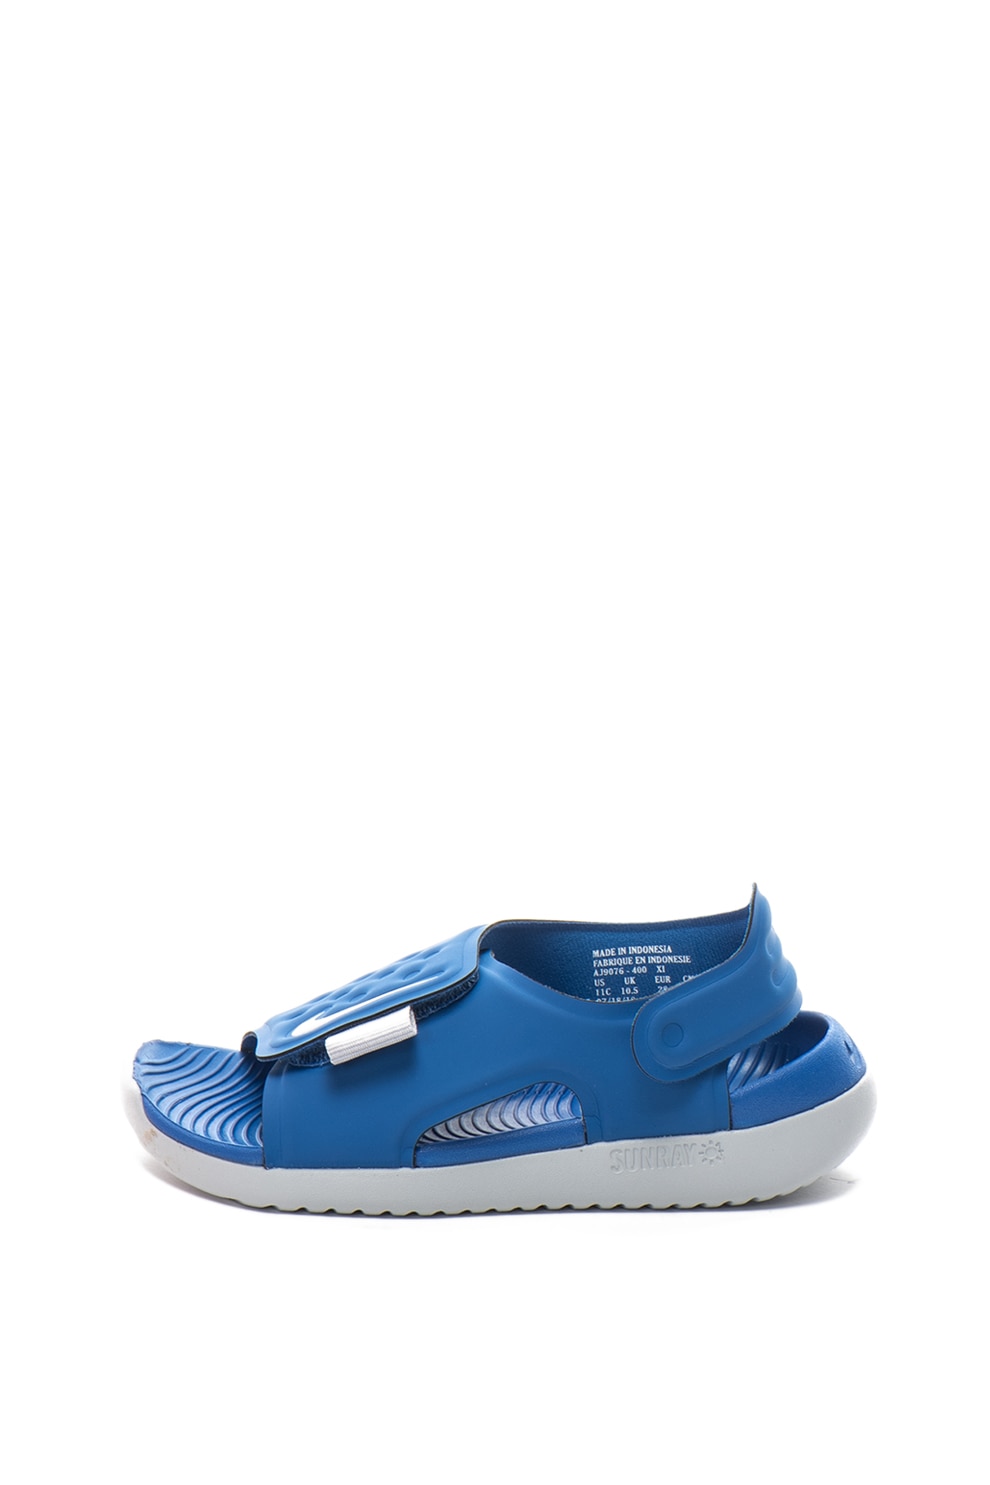 Nike, Sandale cu velcro Sunray, Albastru, 36 EU - eMAG.ro